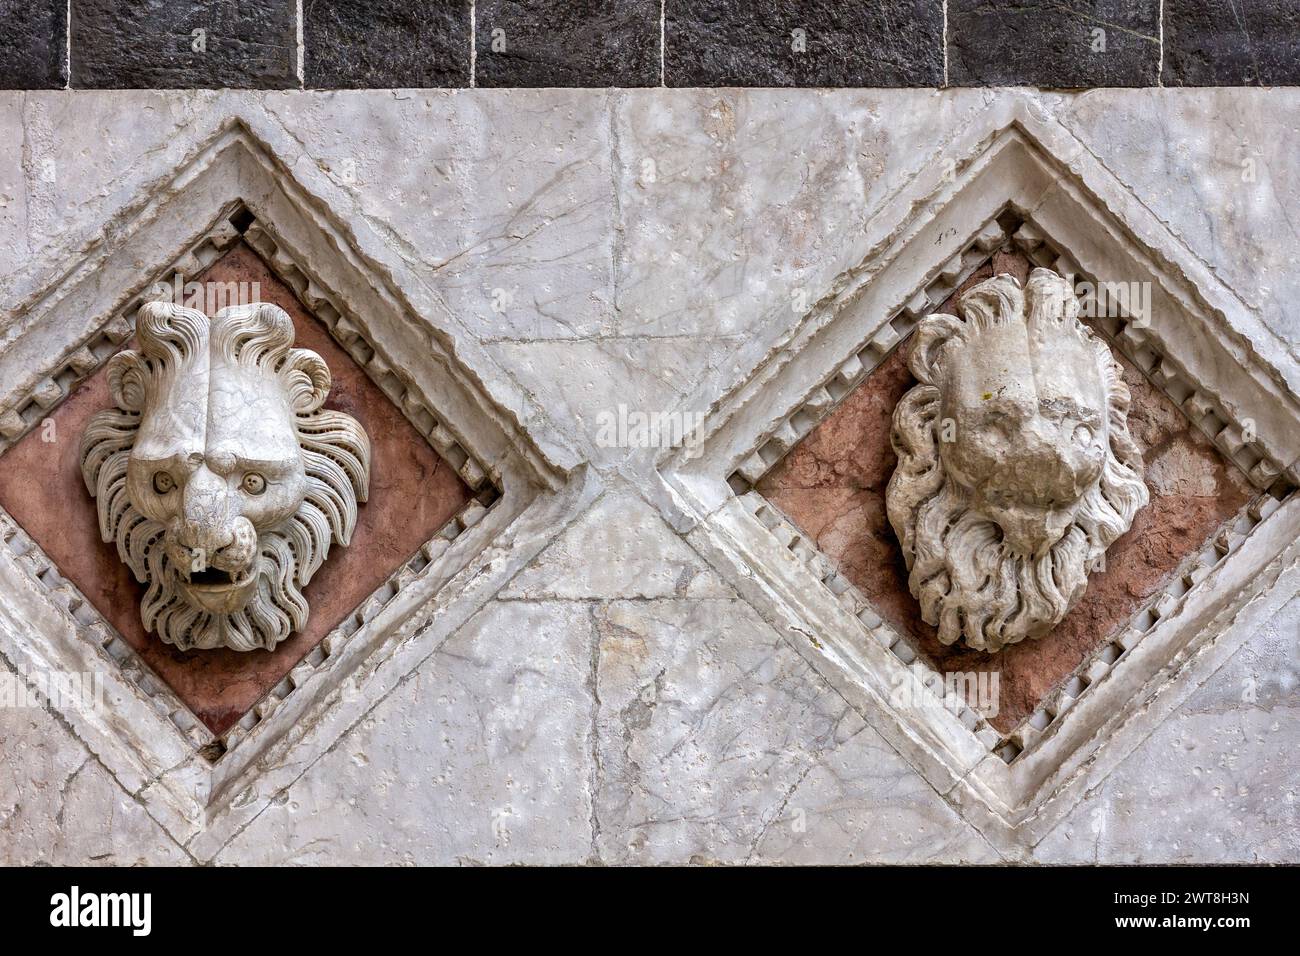 Testa dei leoni scolpita sulla facciata del Battistero di San Giovanni (Battistero di San Giovanni) a Siena, Toscana, Italia, Europa. Foto Stock